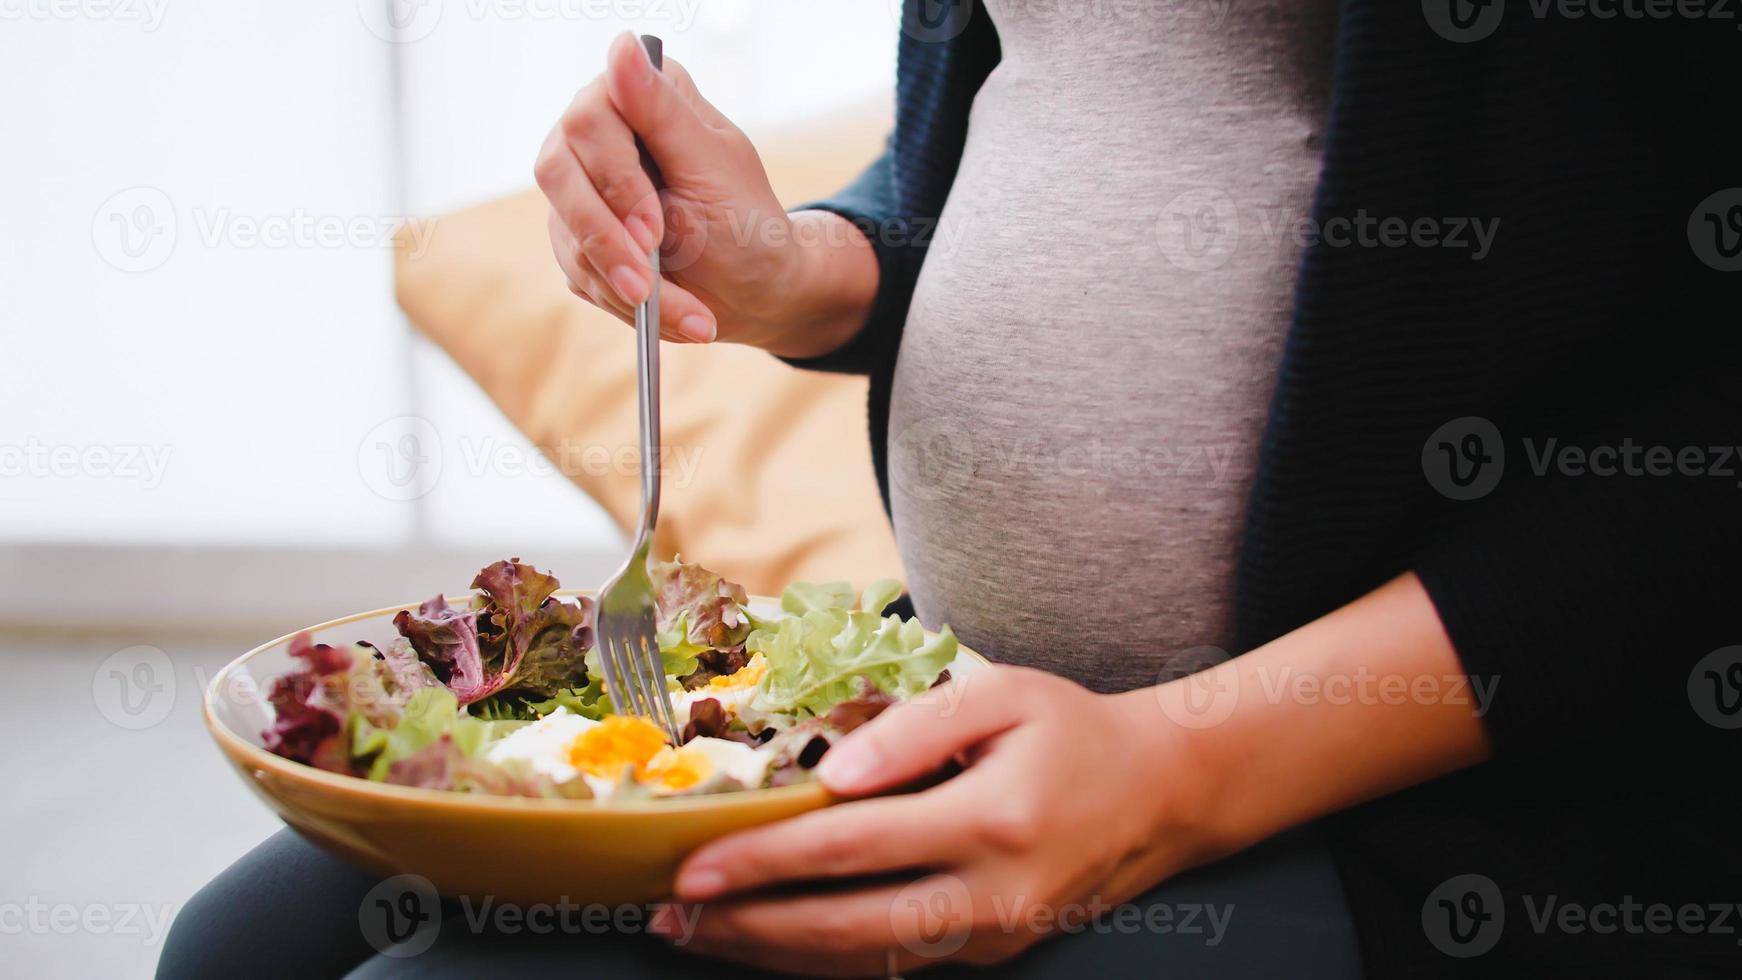 la femme enceinte mange des aliments sains pour son bébé à naître. photo